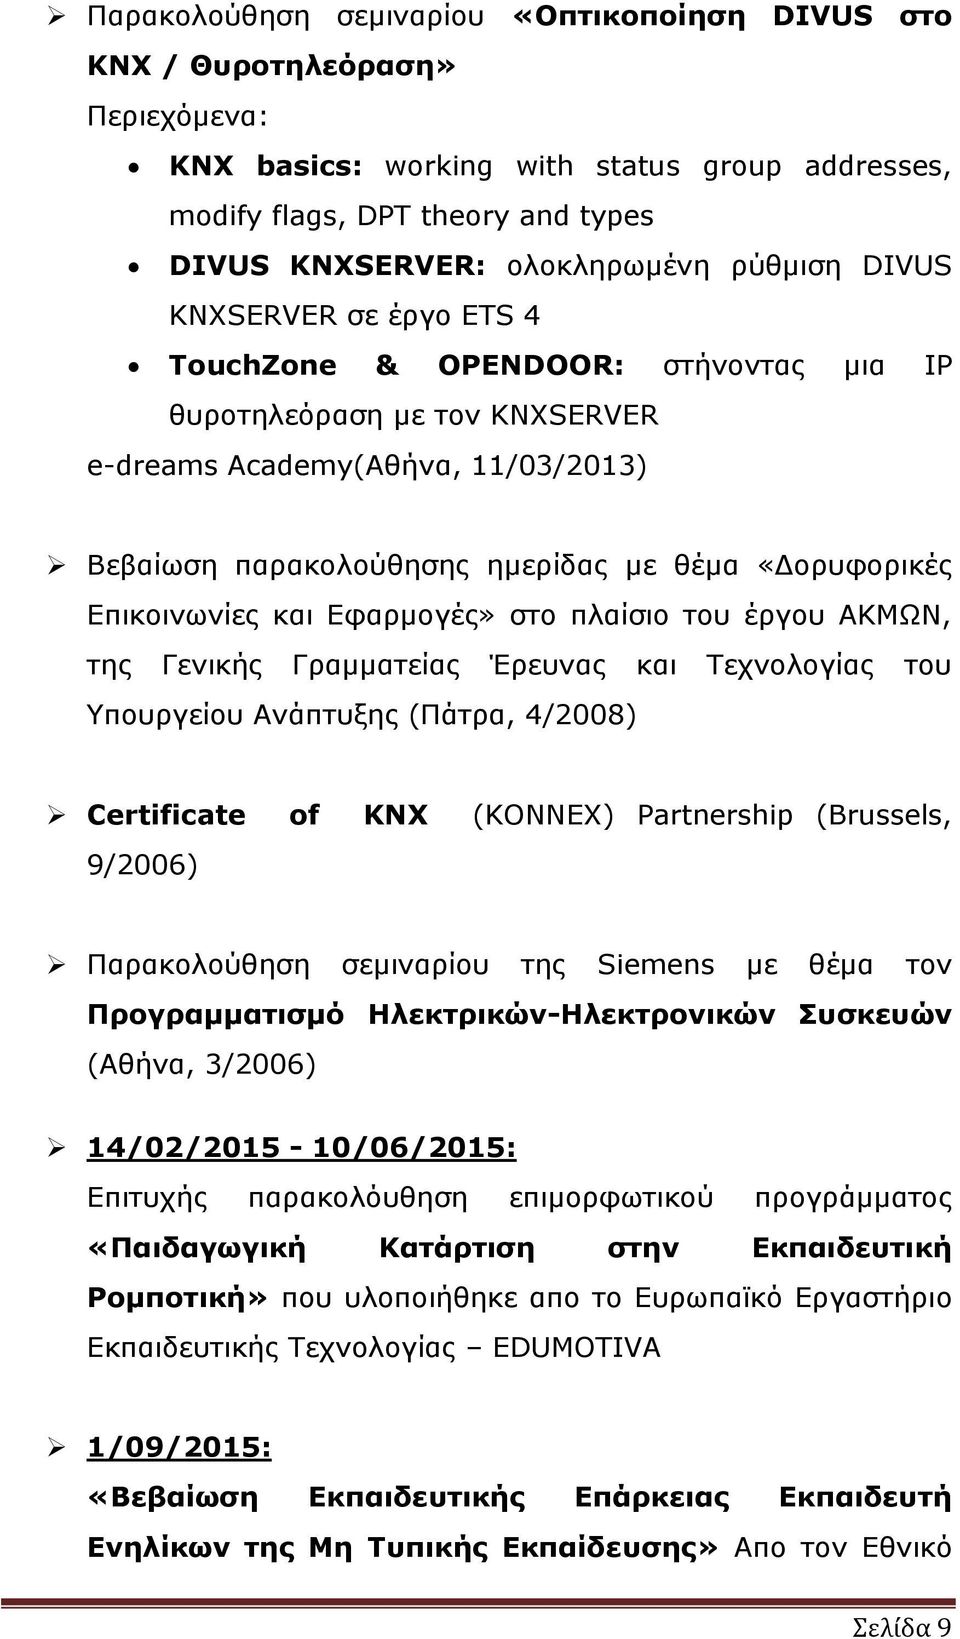 Επικοινωνίες και Εφαρμογές» στο πλαίσιο του έργου ΑΚΜΩΝ, της Γενικής Γραμματείας Έρευνας και Τεχνολογίας Υπουργείου Ανάπτυξης (Πάτρα, 4/2008) του Certificate of KNX (KONNEX) Partnership (Brussels,